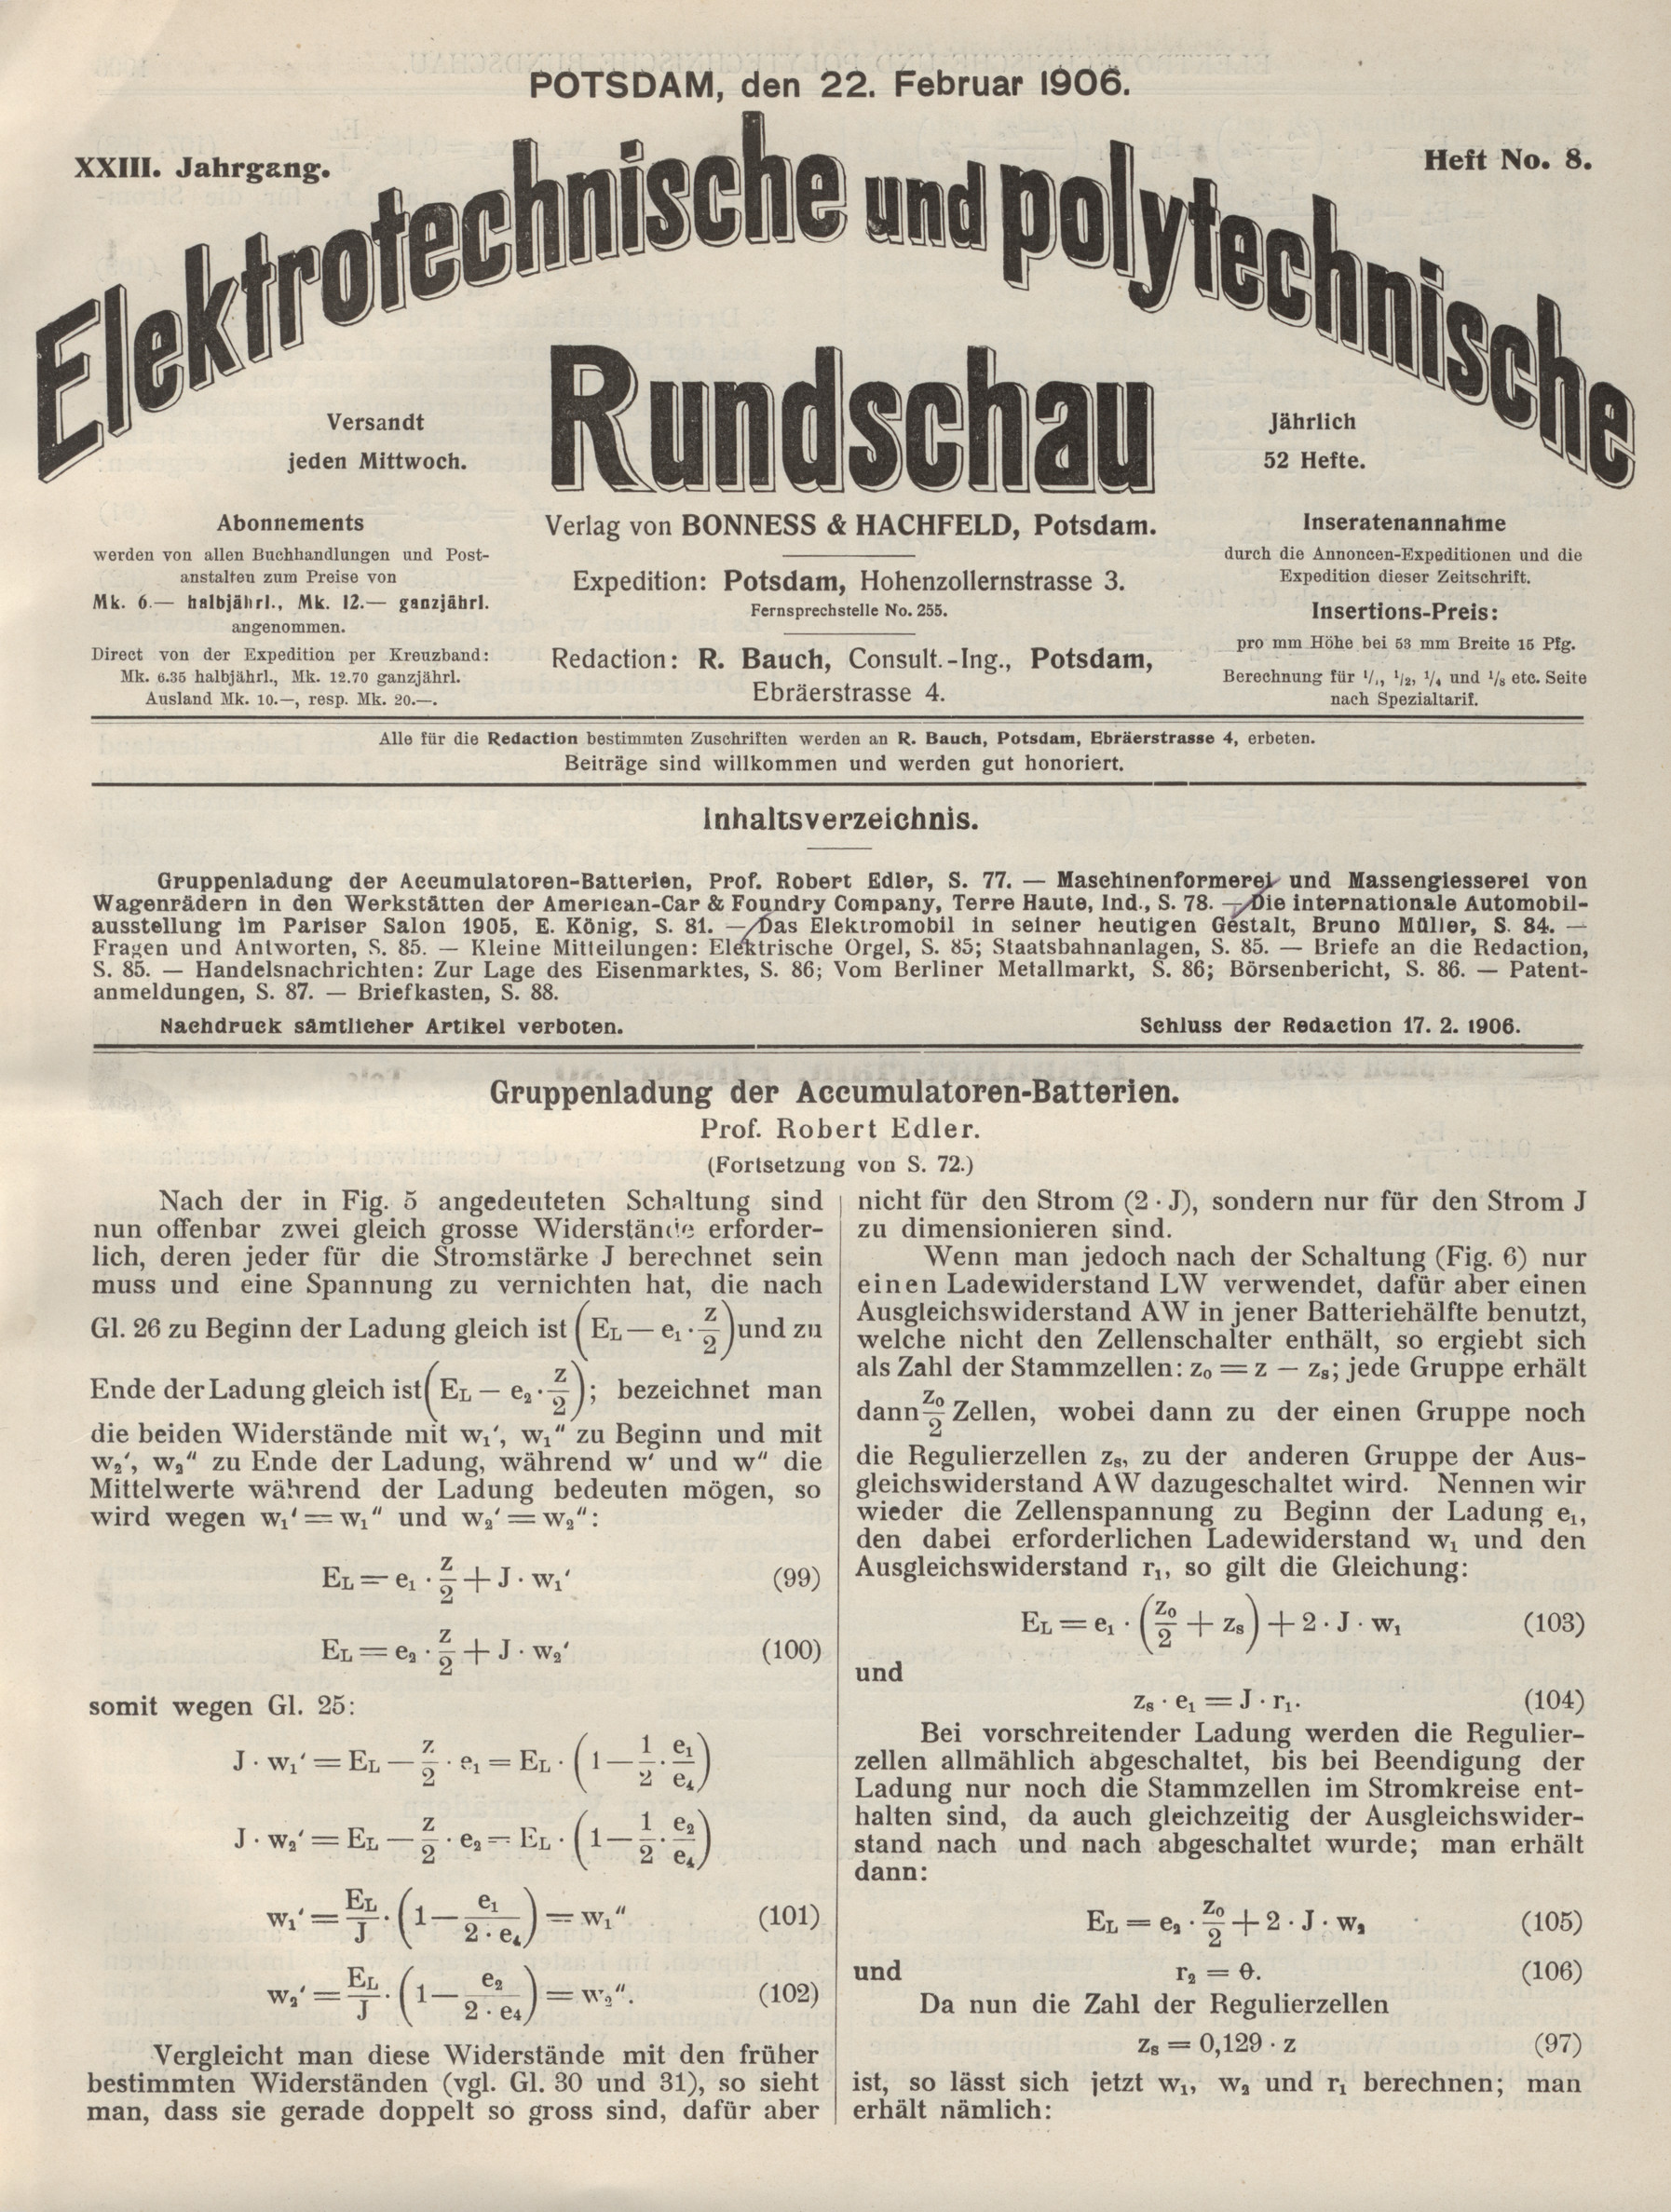 Elektrotechnische und polytechnische Rundschau, XXIII. Jahrgang, Heft No. 8